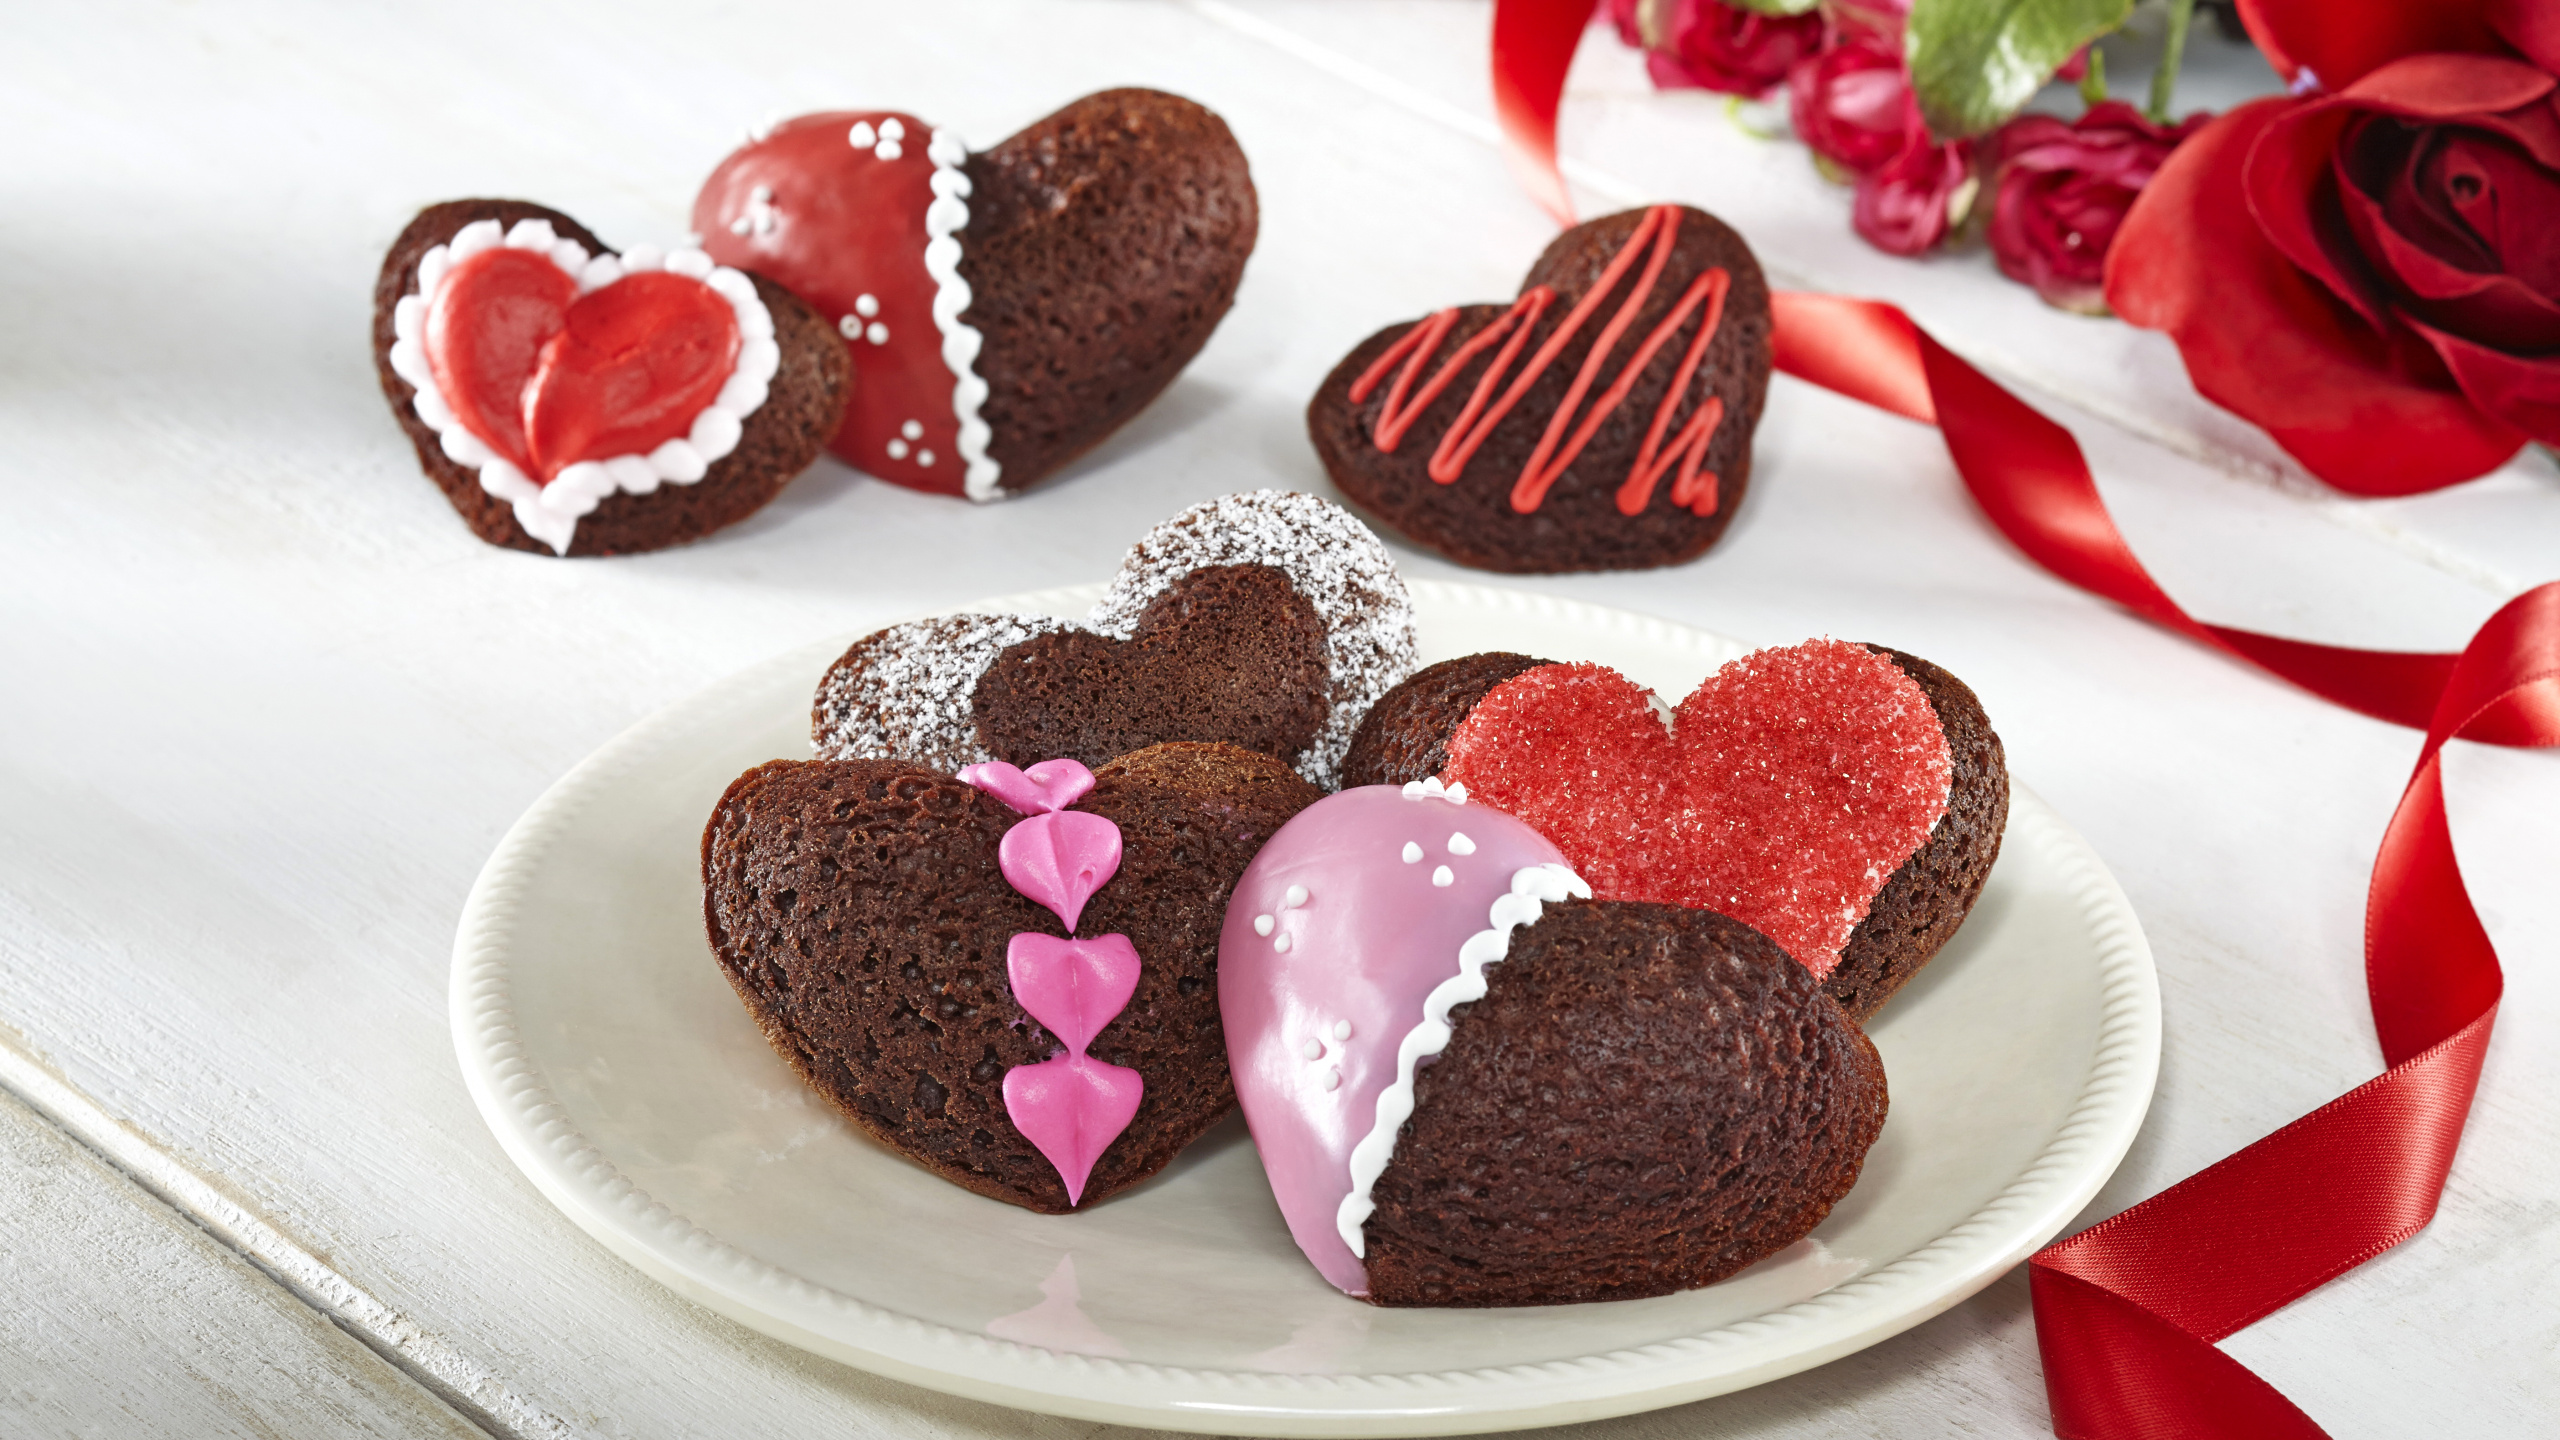 Schokoladenkuchen, Dessert, Valentines Tag, Schokolade, Lebensmittel. Wallpaper in 2560x1440 Resolution